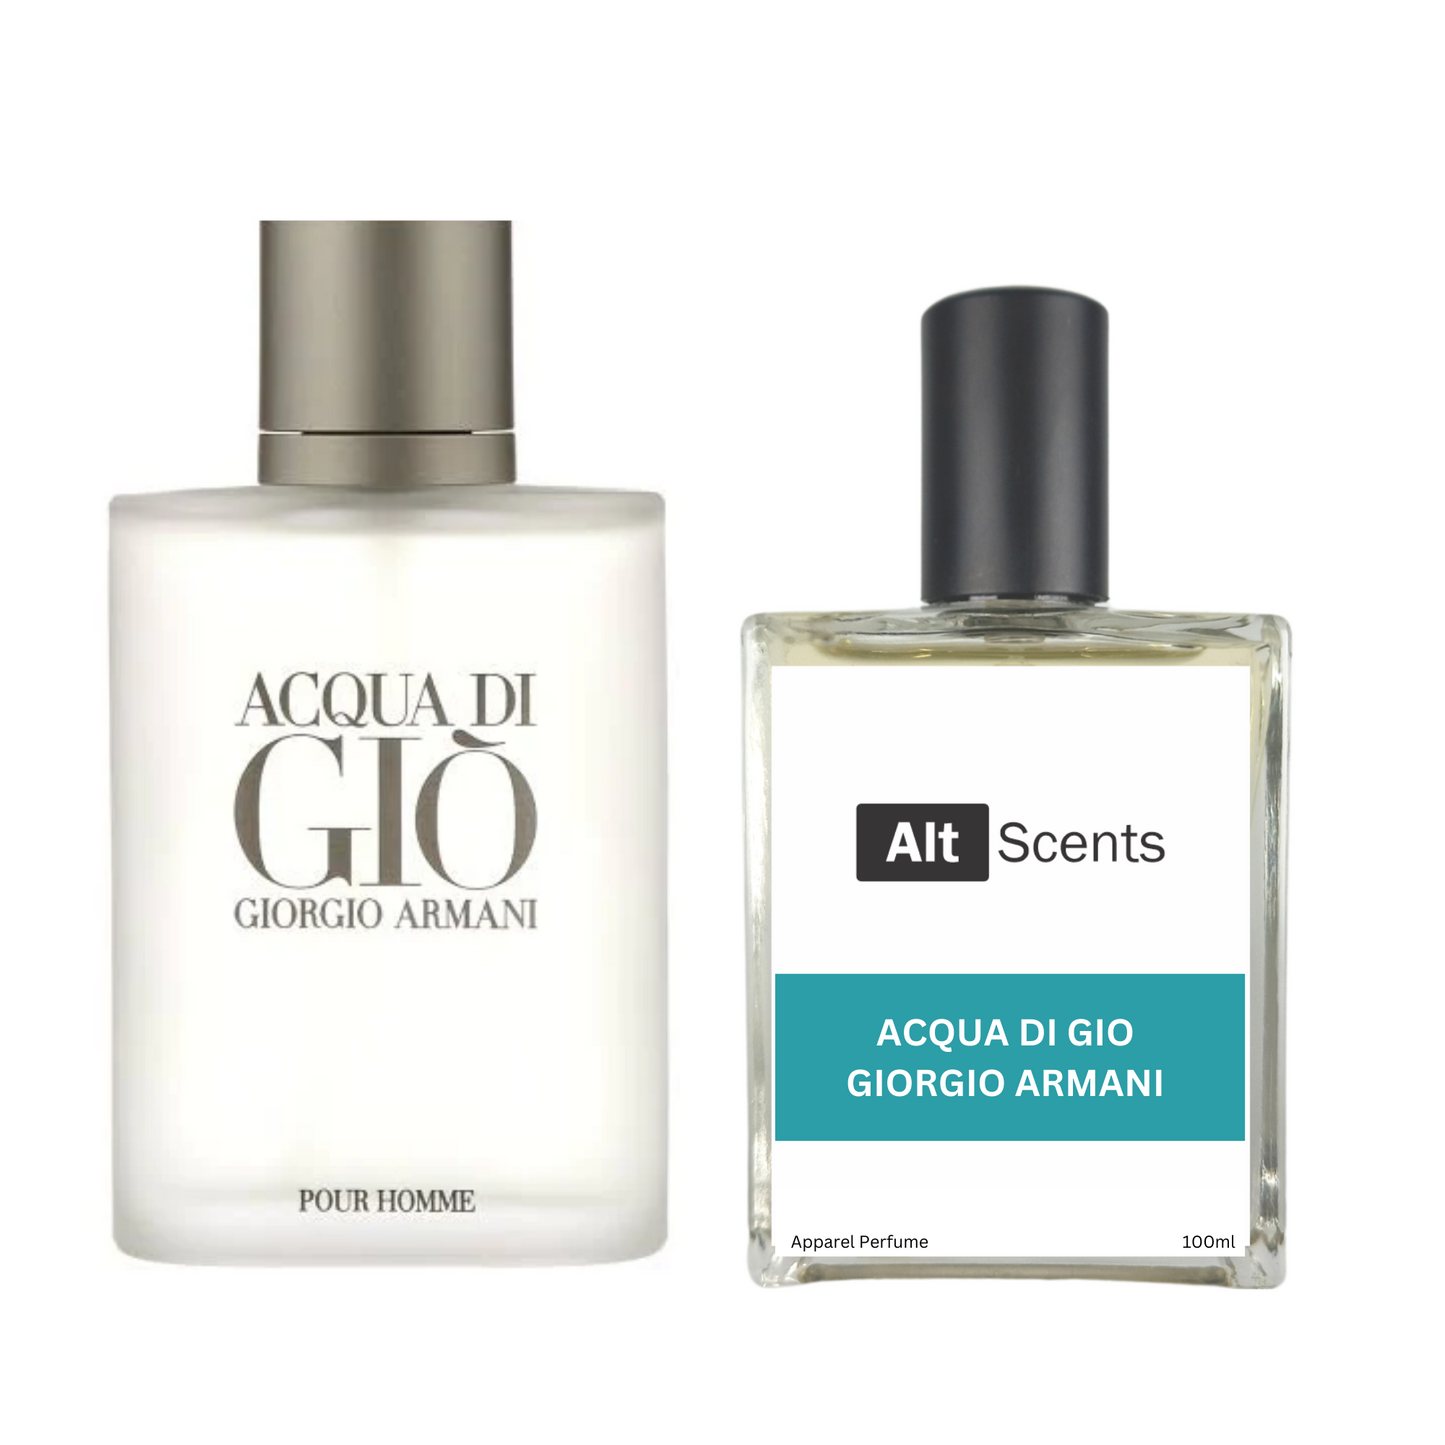 Giorgio Armani Acqua di Gio type Perfume for Men